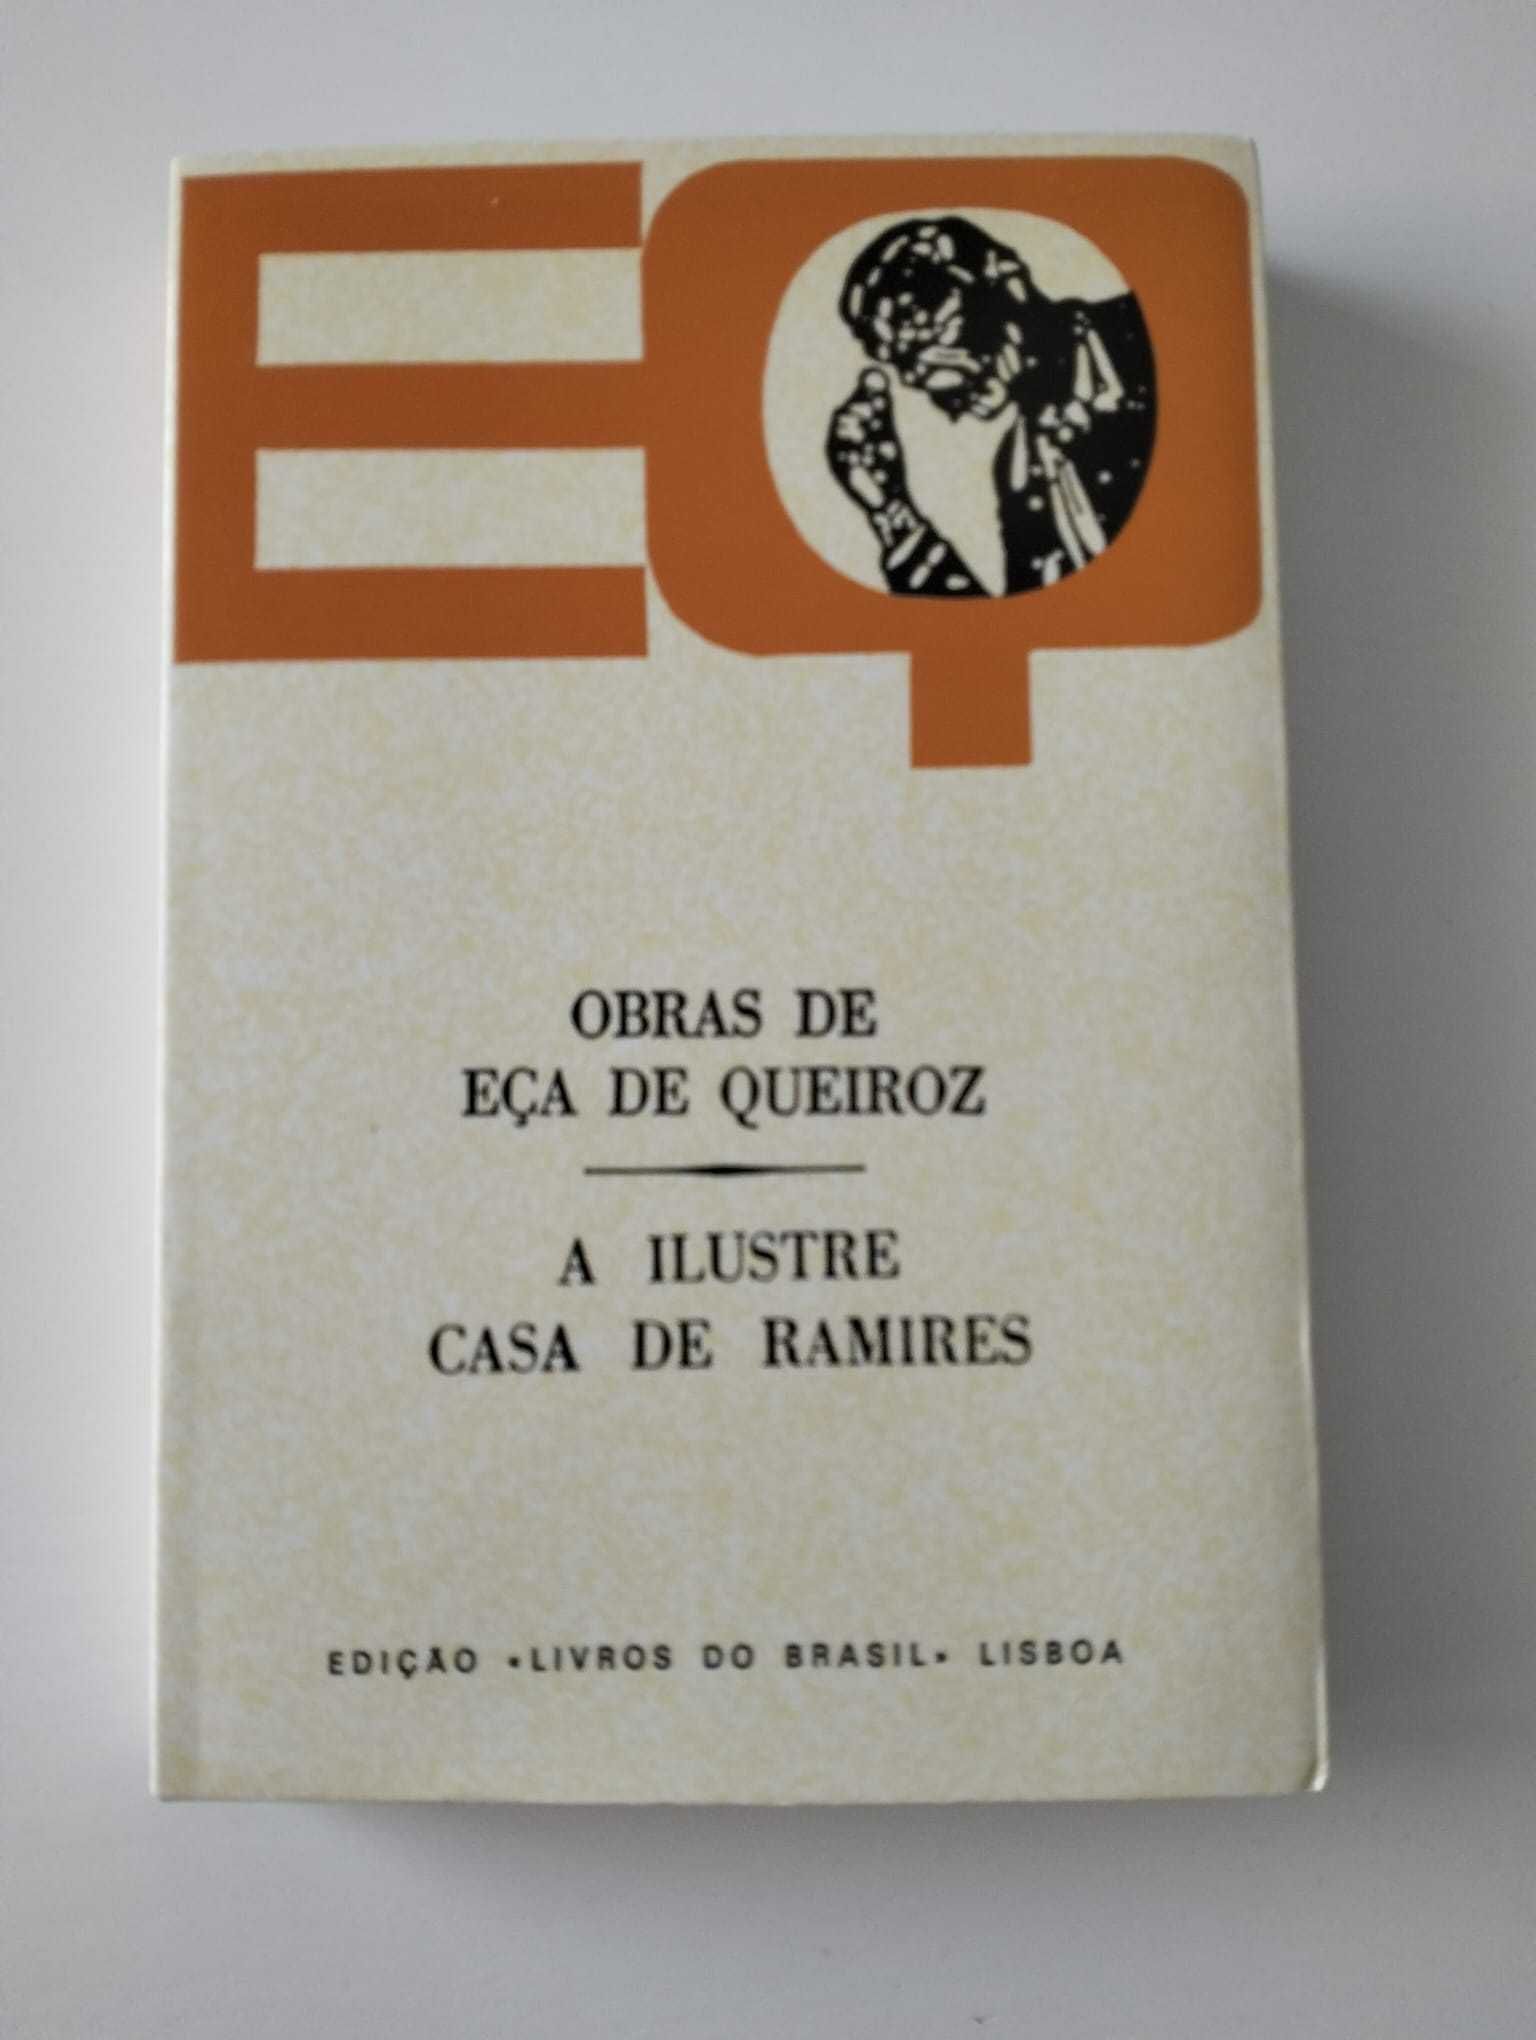 Livro "A Ilustre Casa de Ramires" - Eça de Queiroz